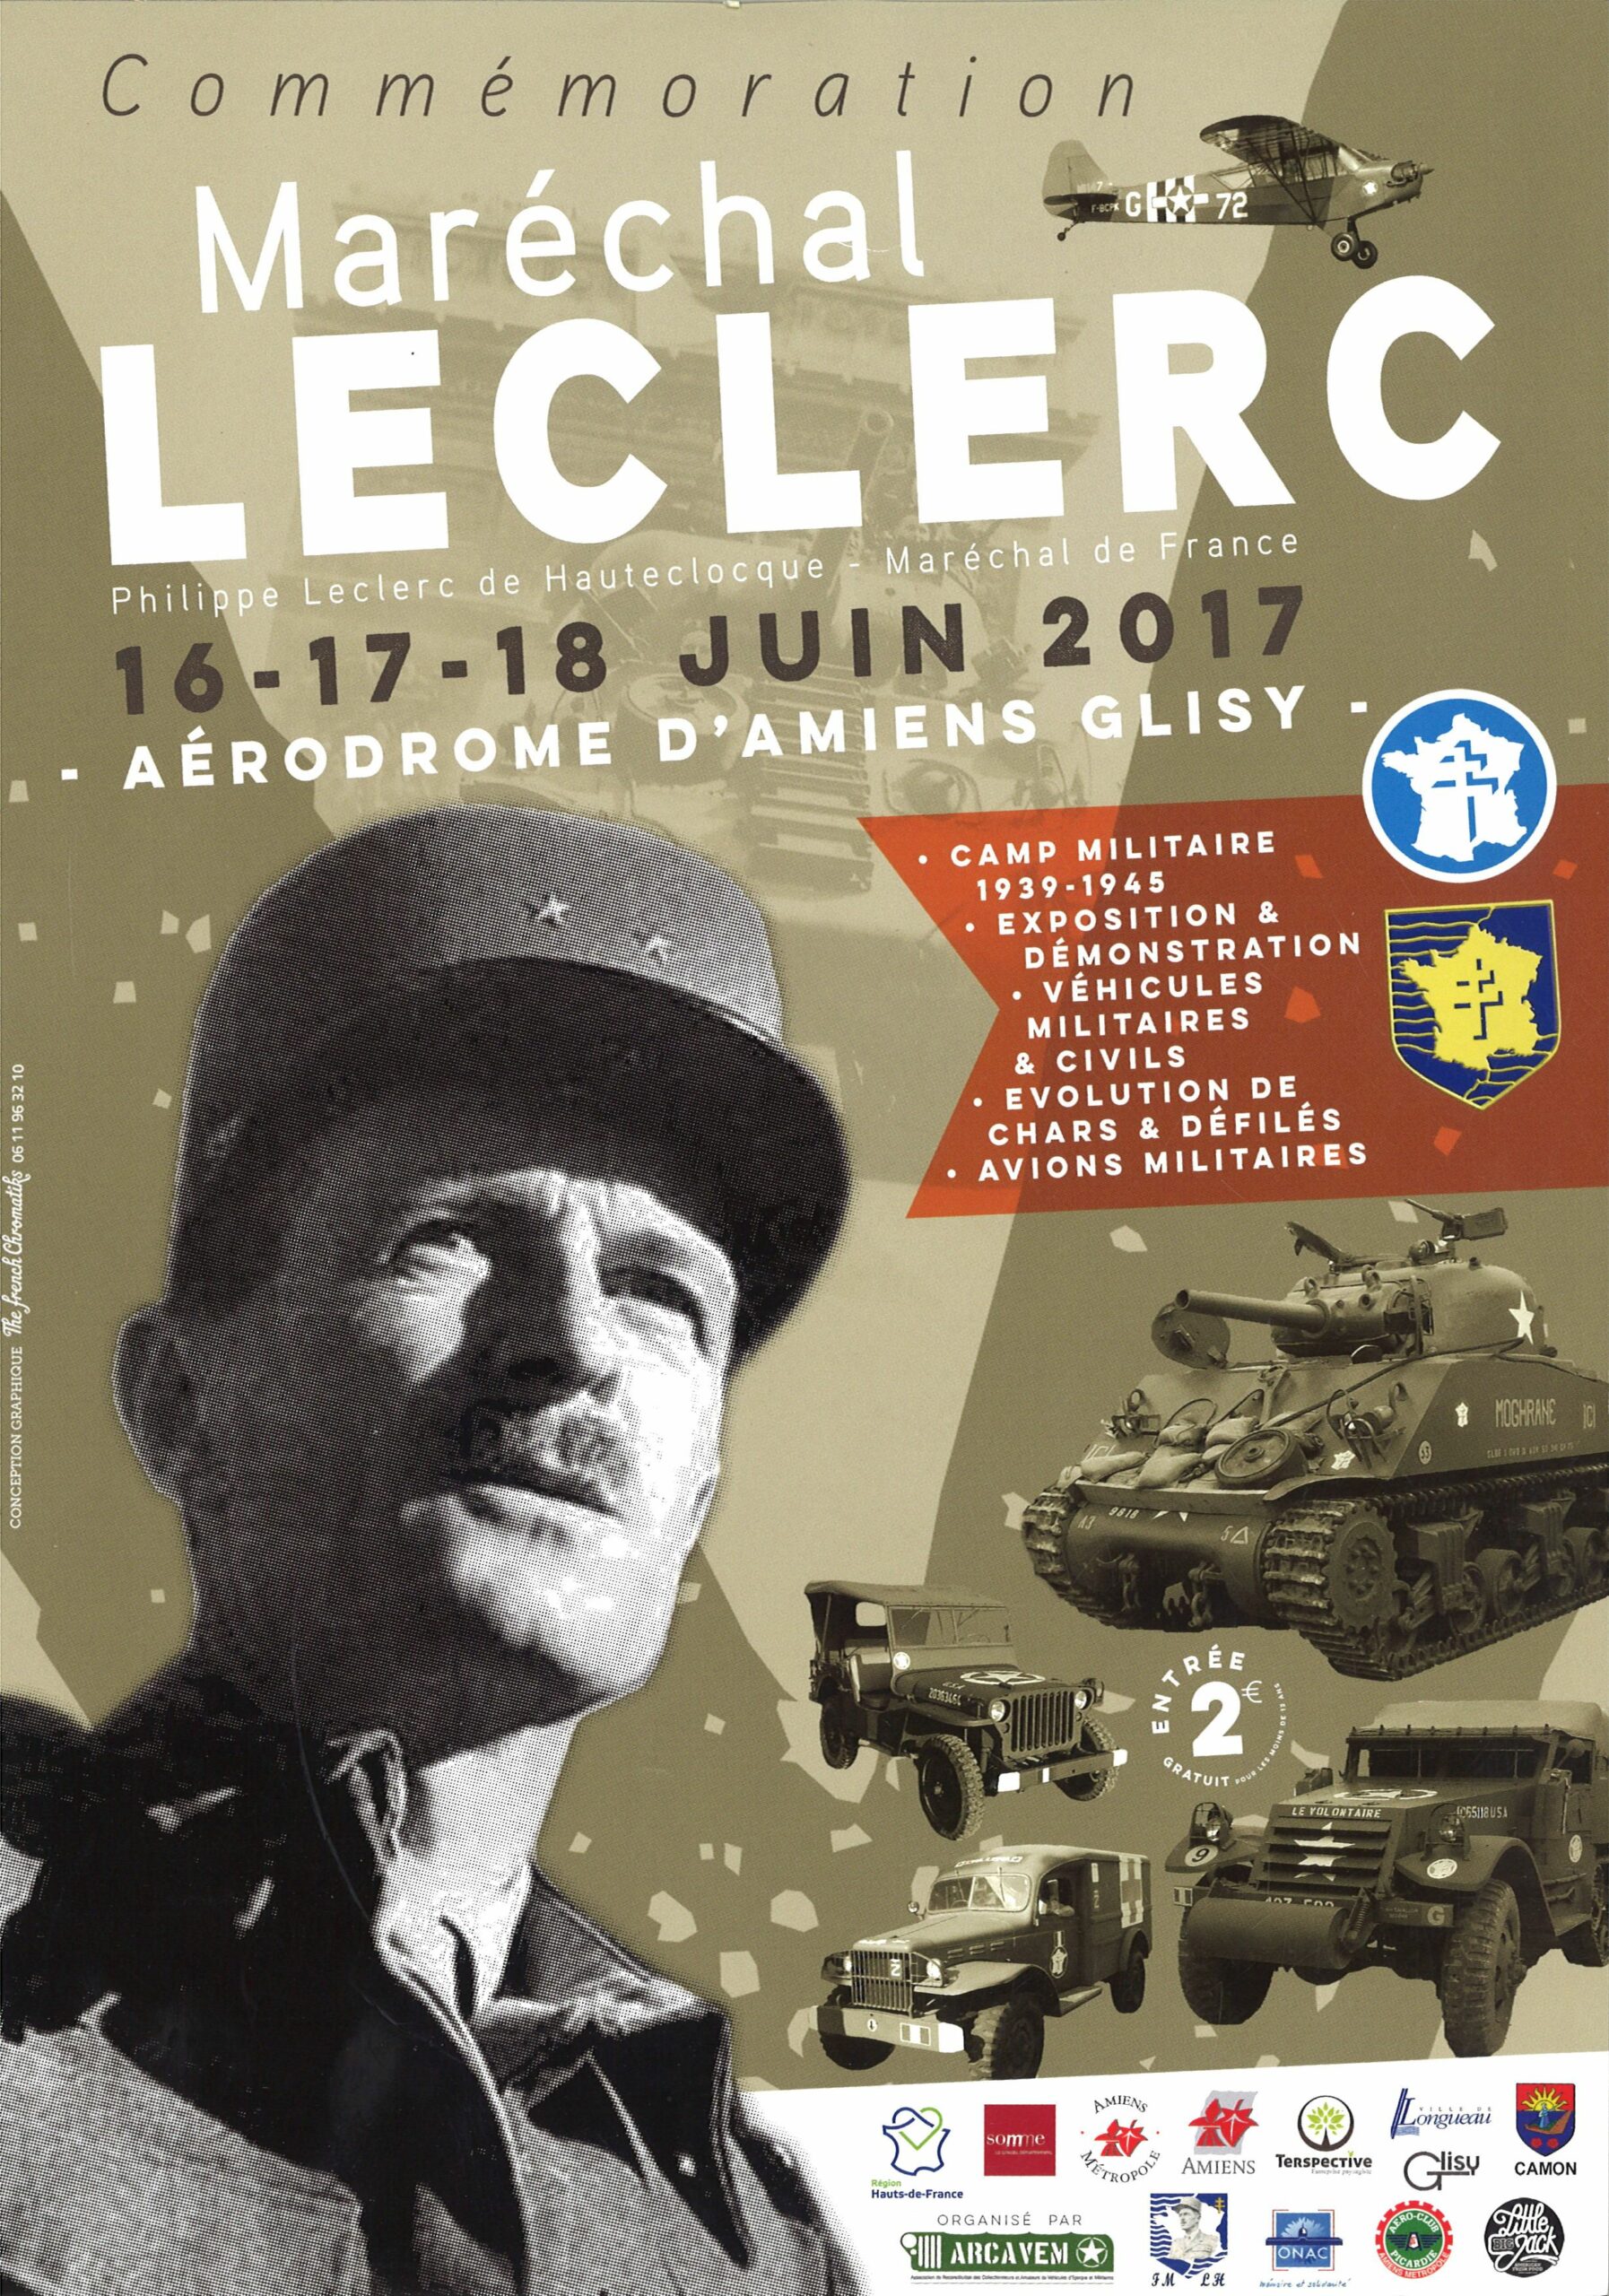 Commémoration du maréchal Leclerc (16-18 juin 2017)